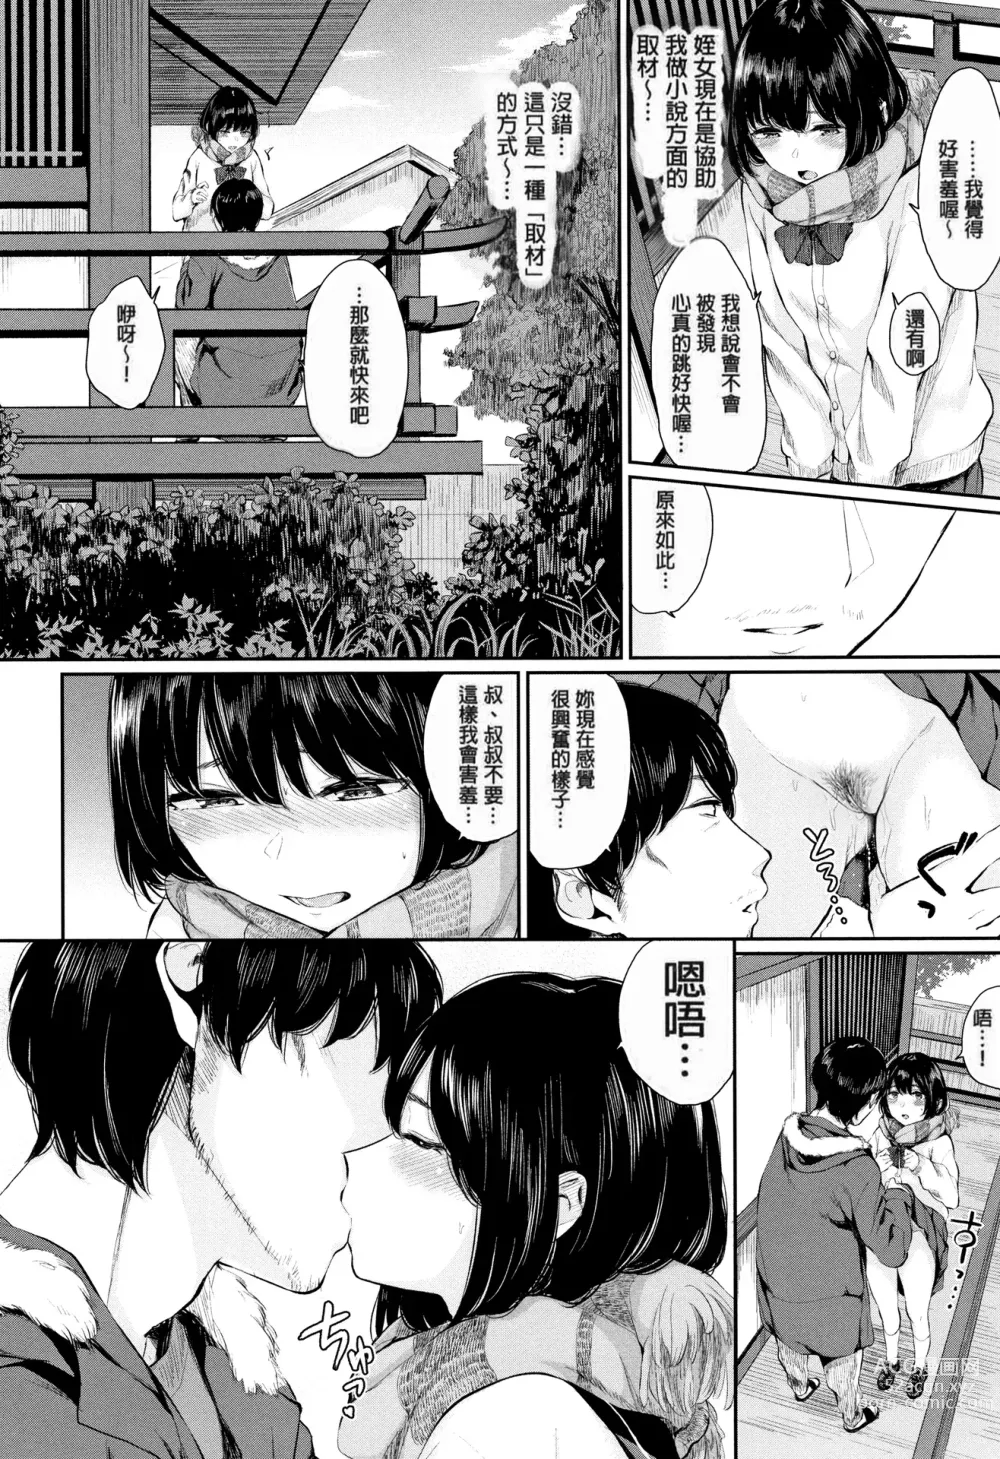 Page 8 of manga Kannou Biyori (uncensored)